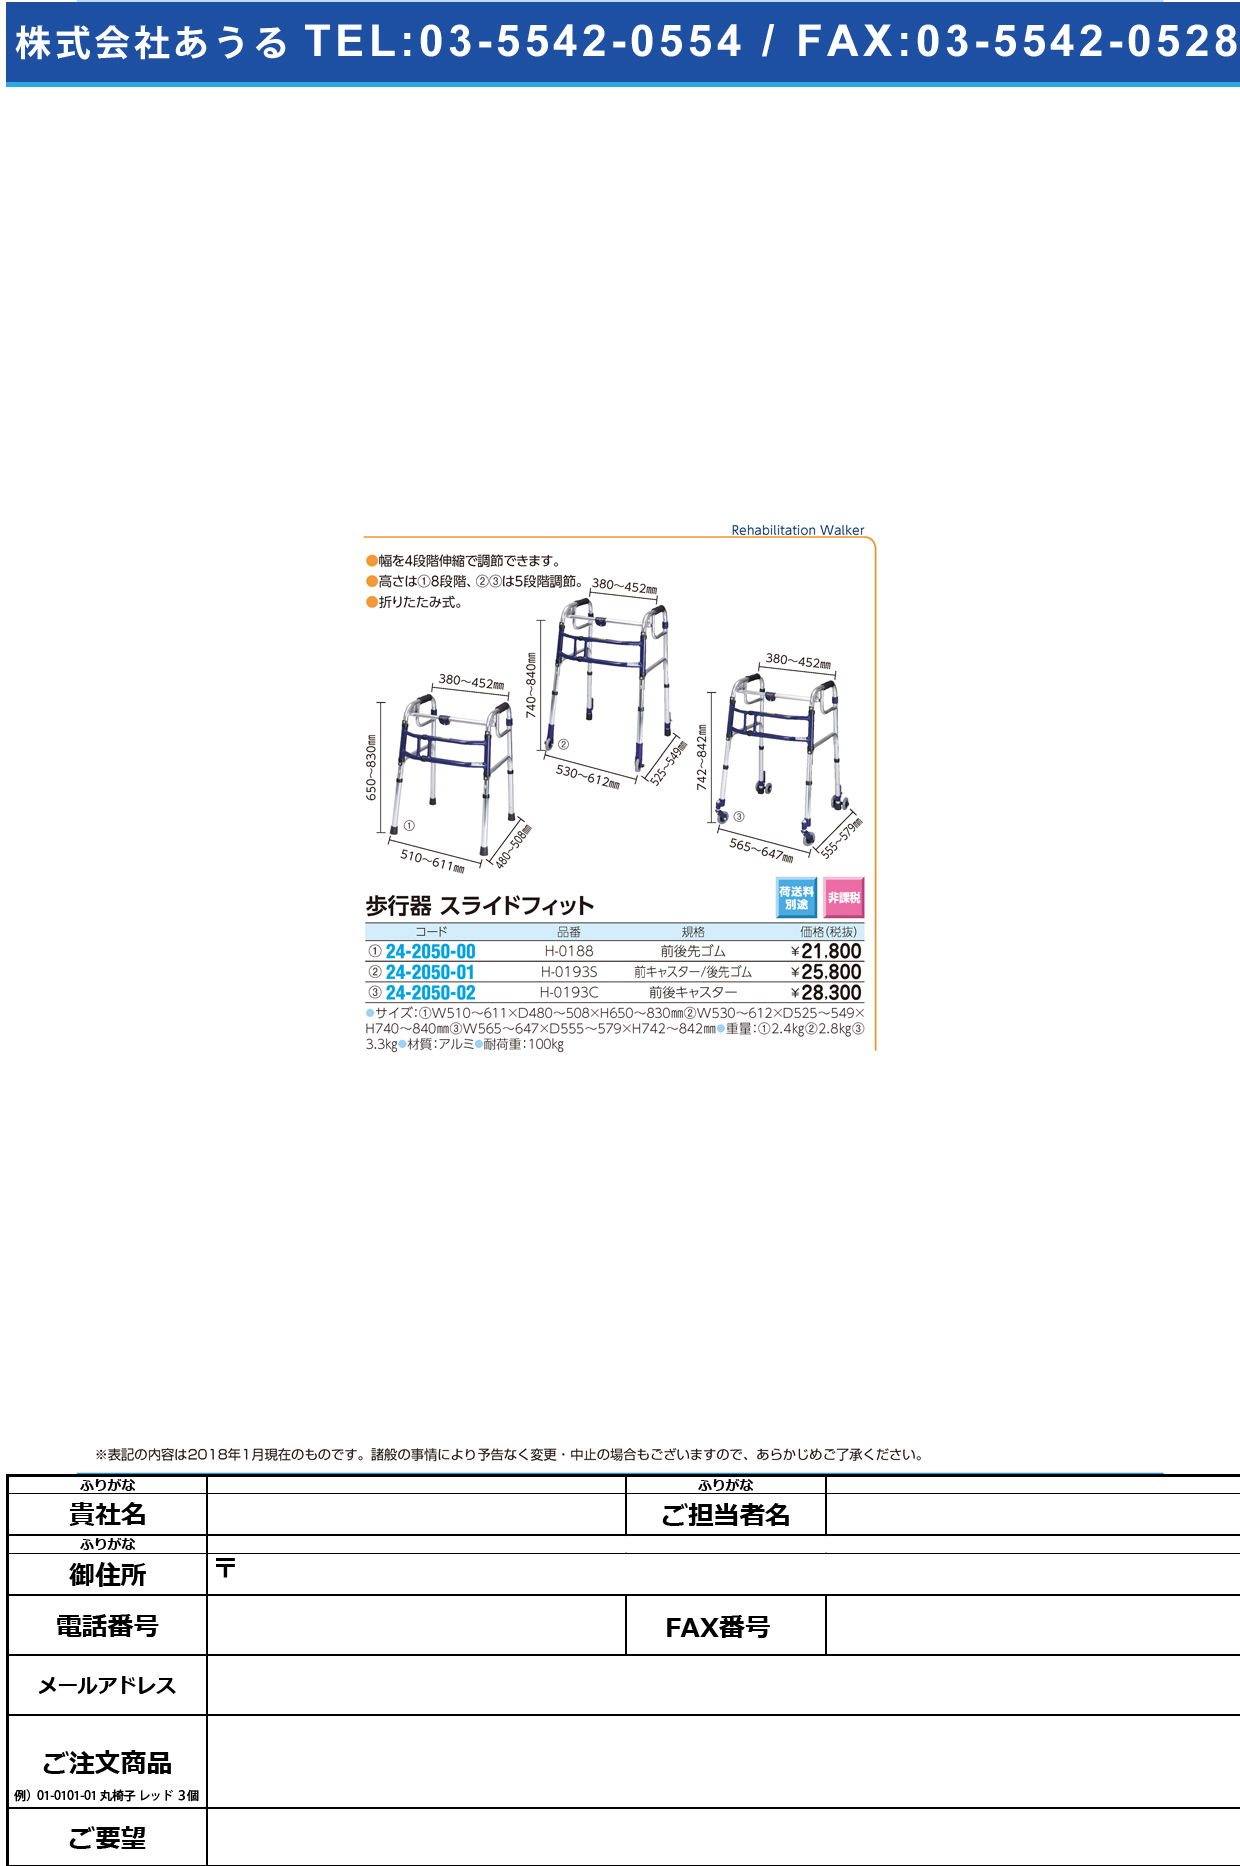 (24-2050-00)スライドフィット（Ｈタイプ） H-0188(ｽﾀﾝﾀﾞｰﾄﾞ) ｽﾗｲﾄﾞﾌｨｯﾄ(Hﾀｲﾌﾟ)【1台単位】【2018年カタログ商品】